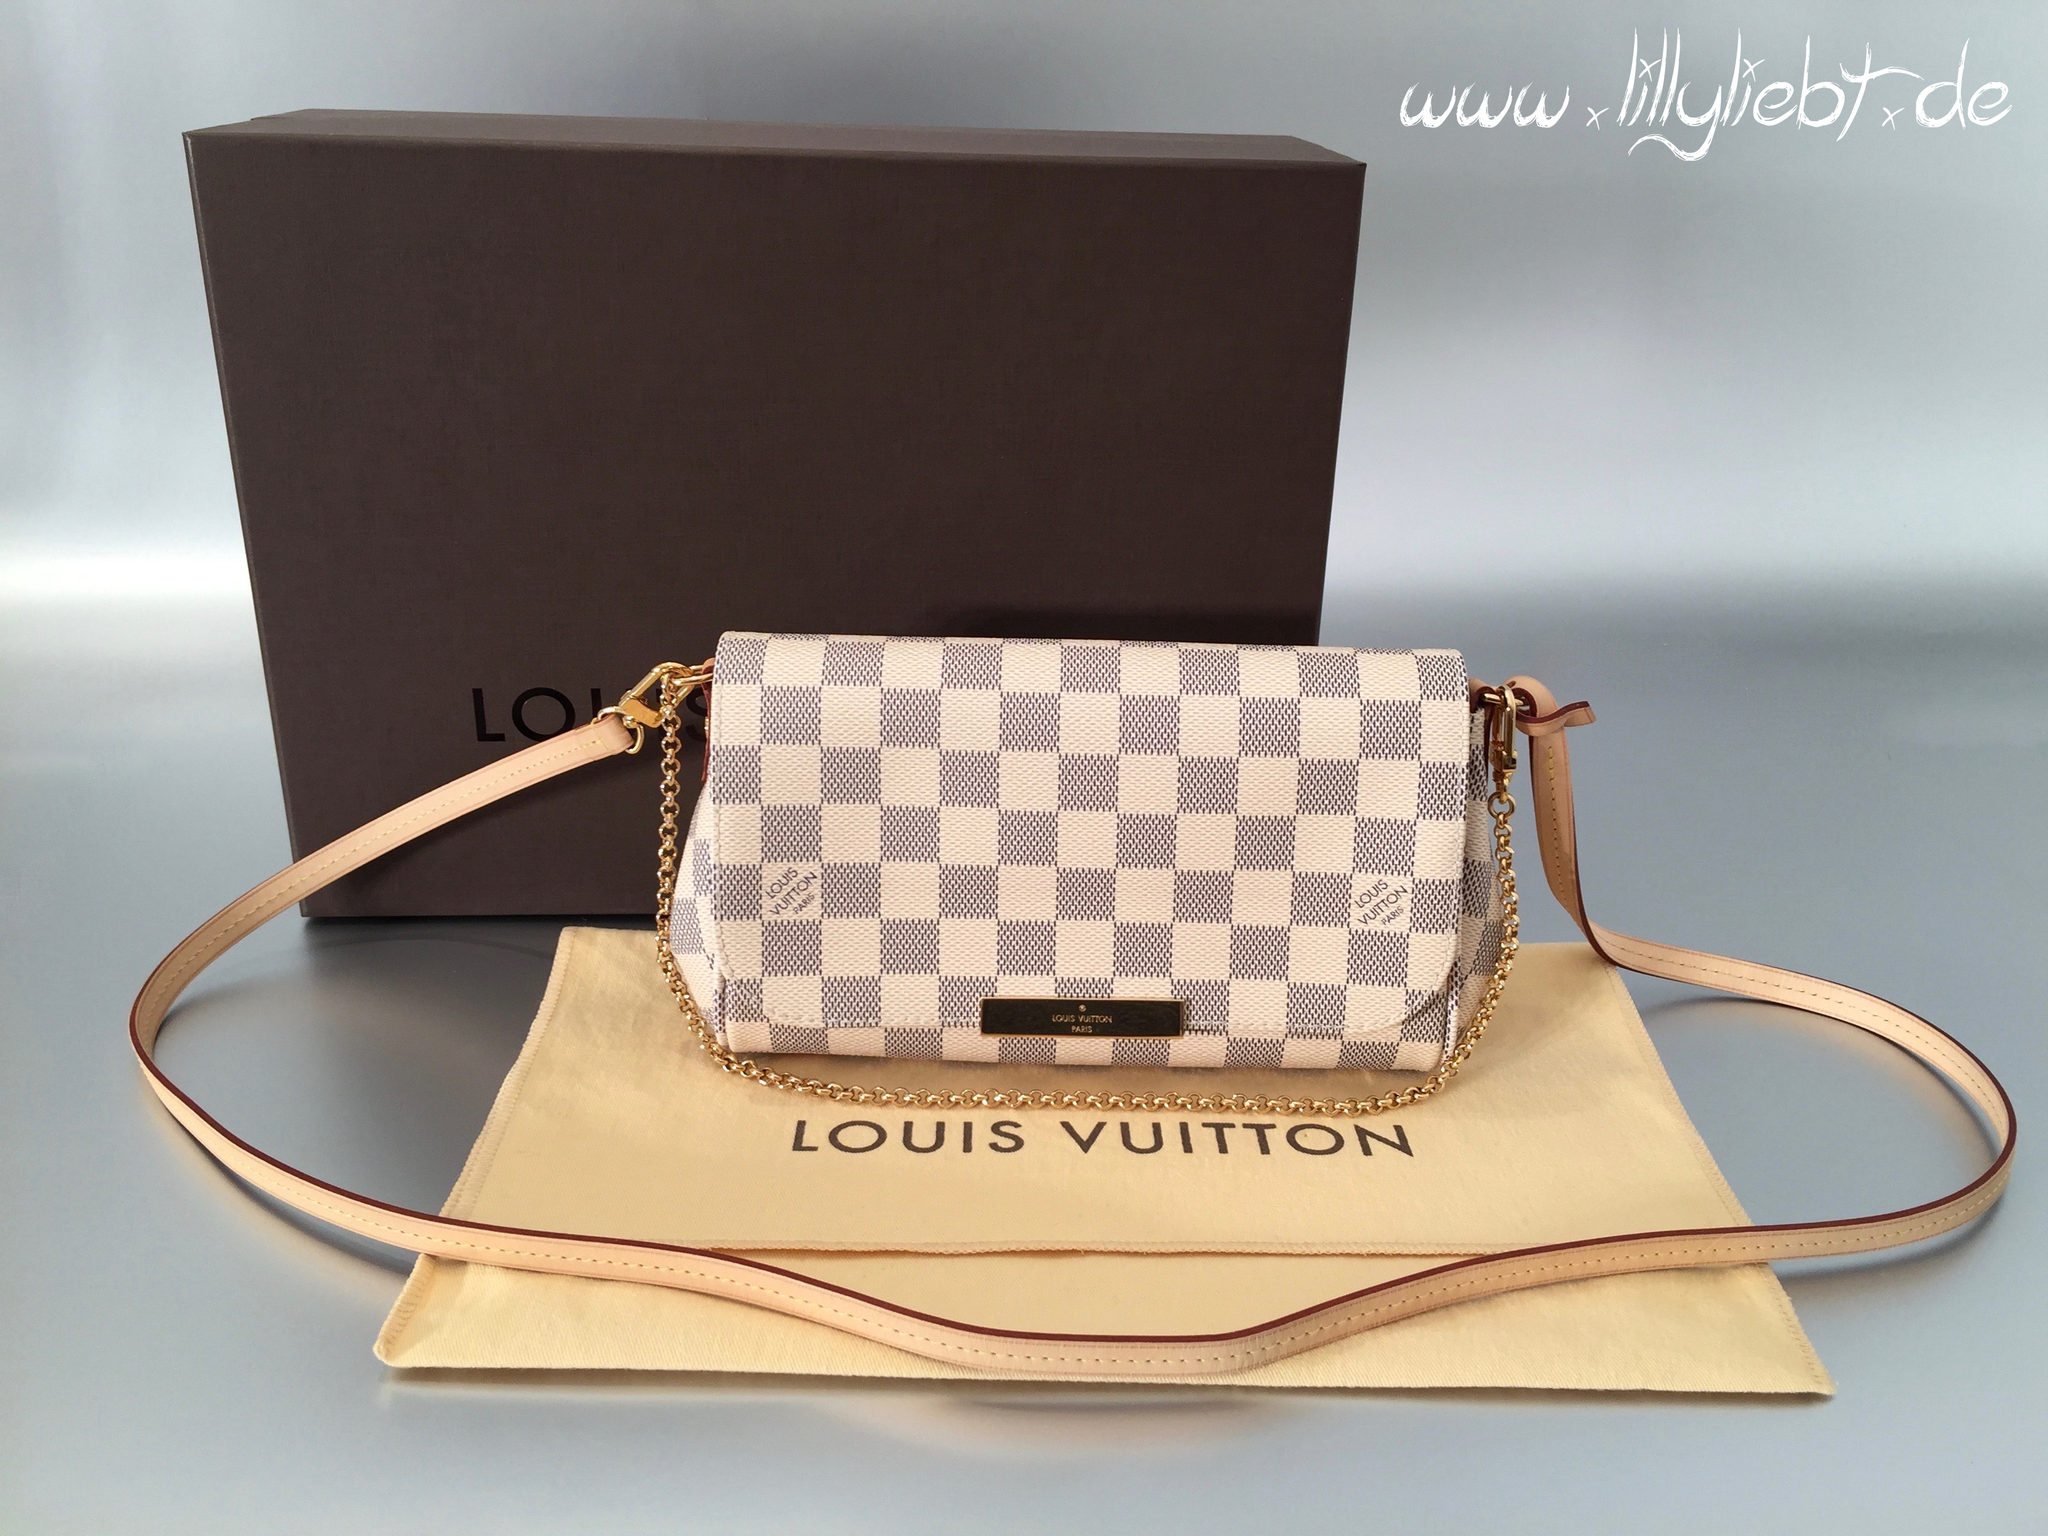 Louis Vuitton Damier Azur Favorite auf Echtheit prüfen – Echtheitscheck